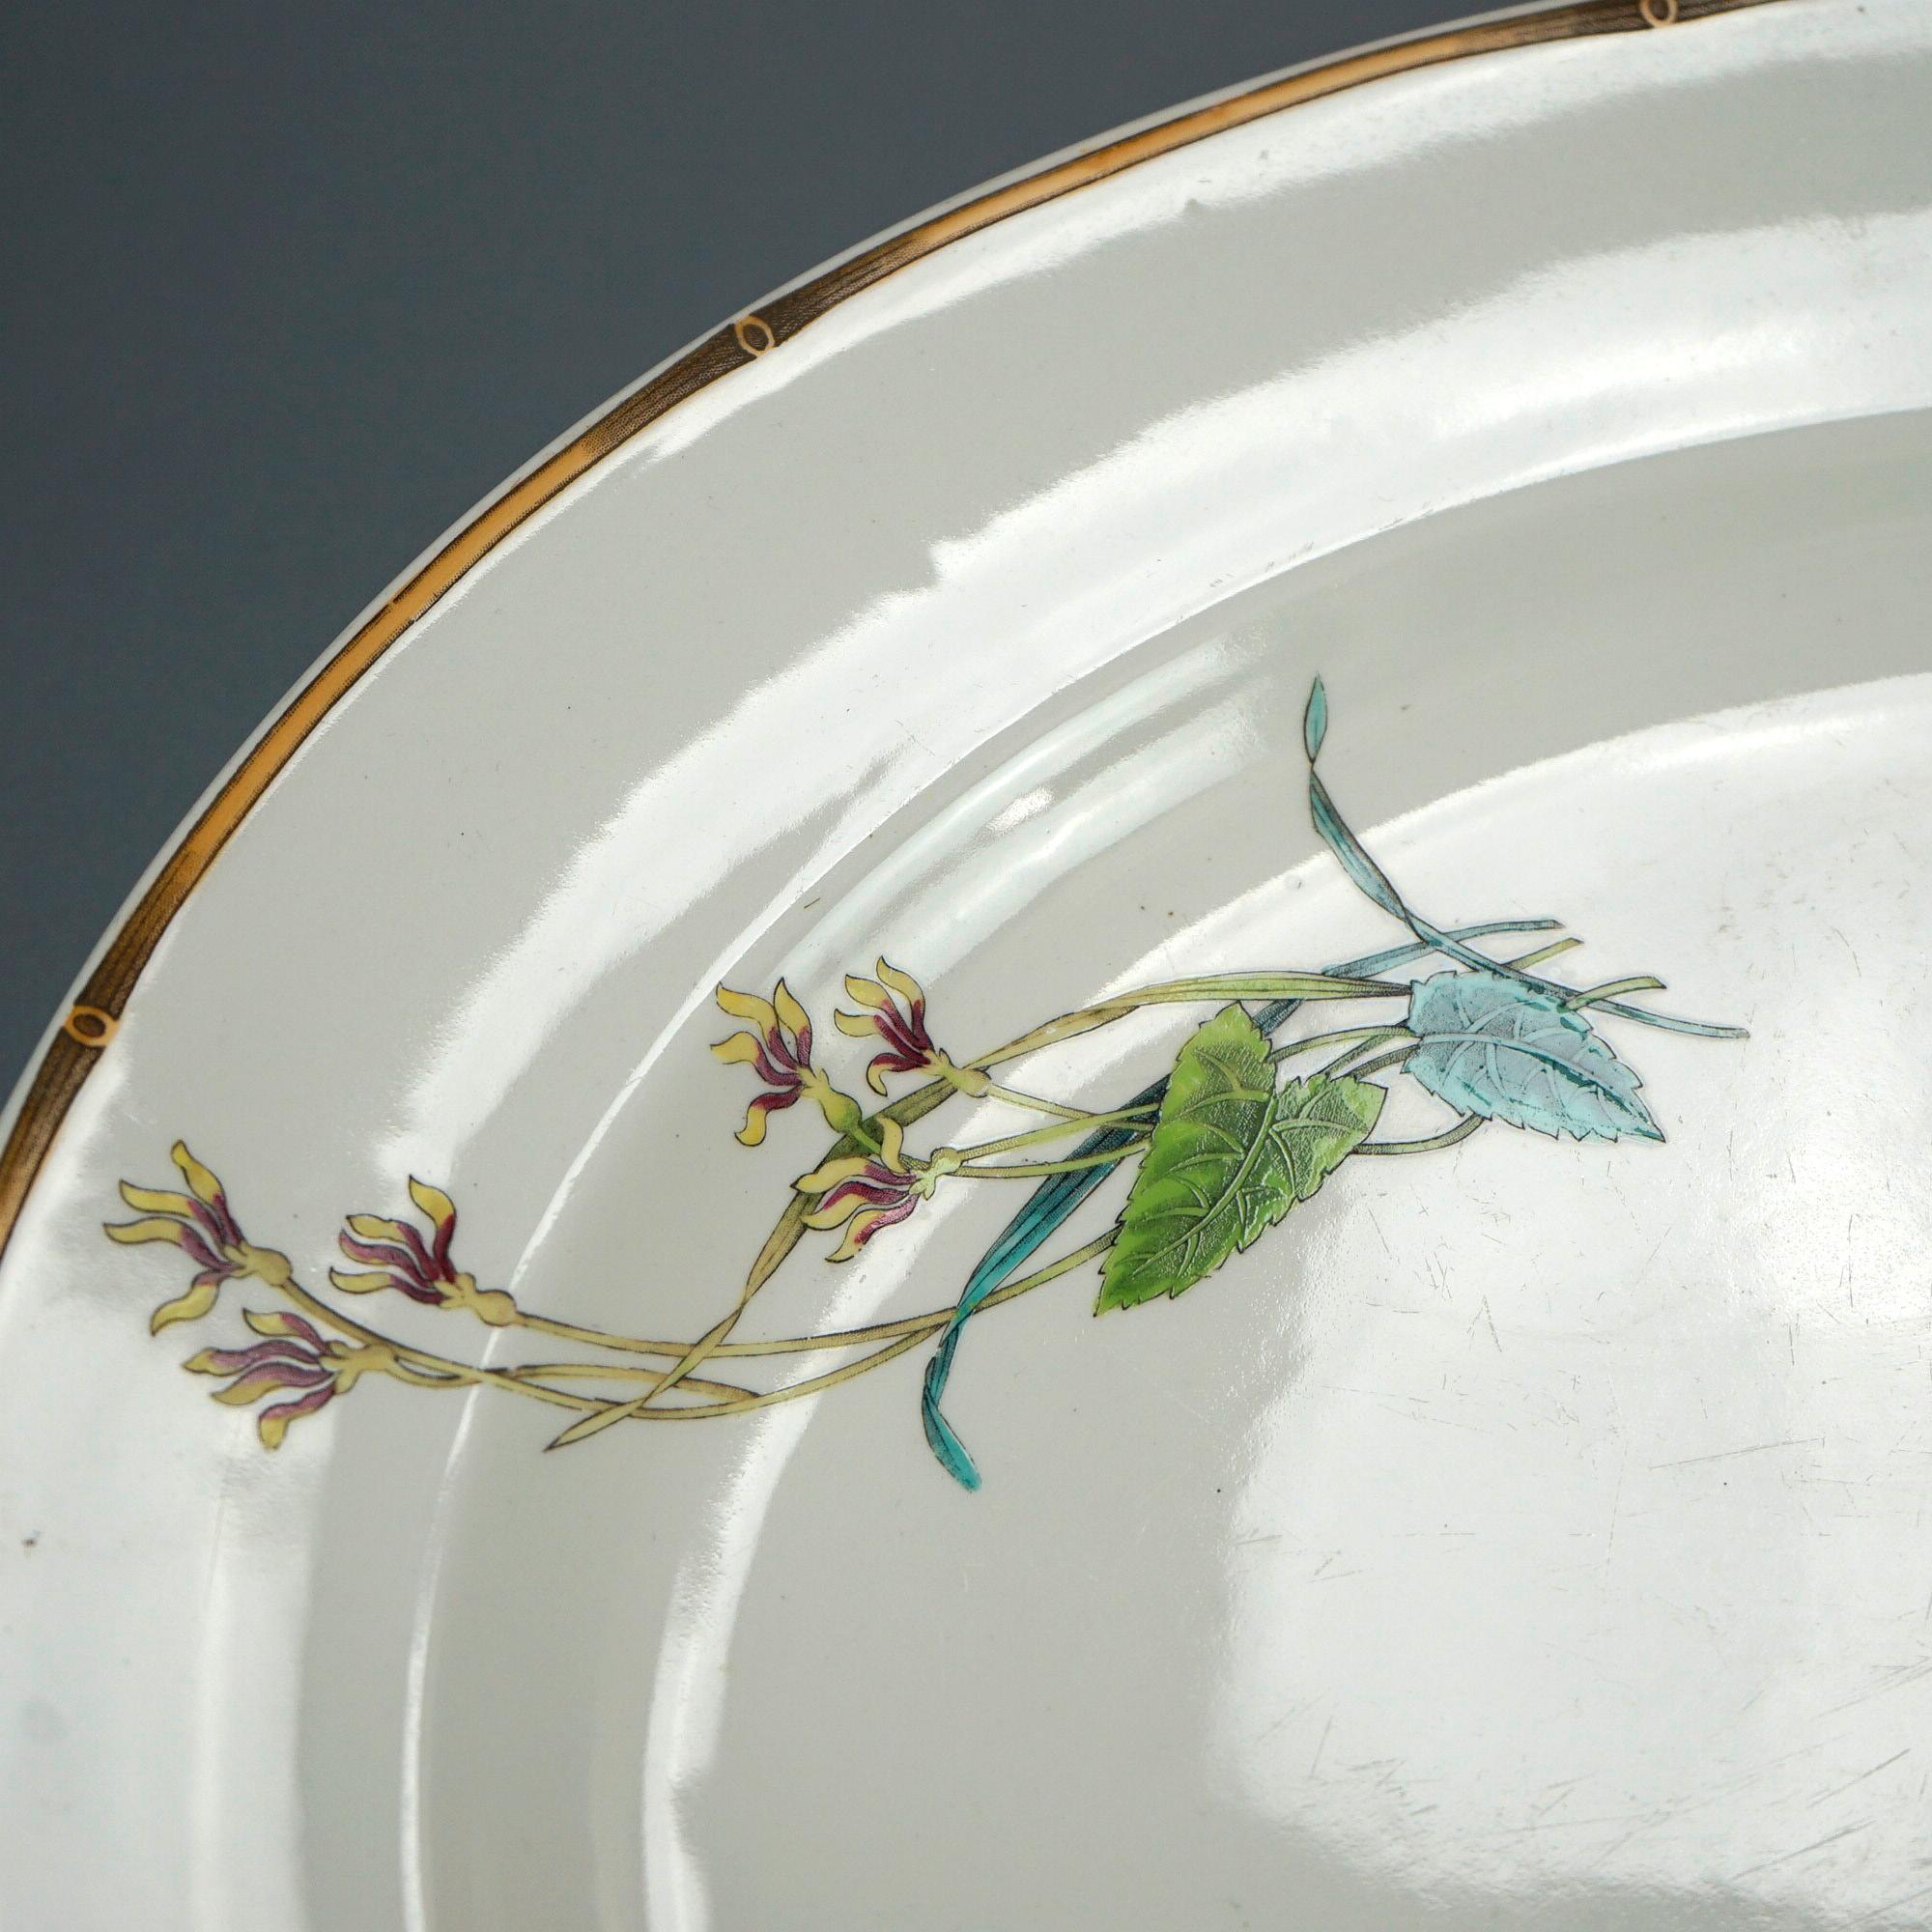 Un ancien plat de service du Mouvement esthétique en porcelaine de forme ovale avec des oiseaux et des éléments de jardin, rehaussé de dorures, 19e siècle

Dimensions : 2,5'' H x 21'' L x 17,5'' P.